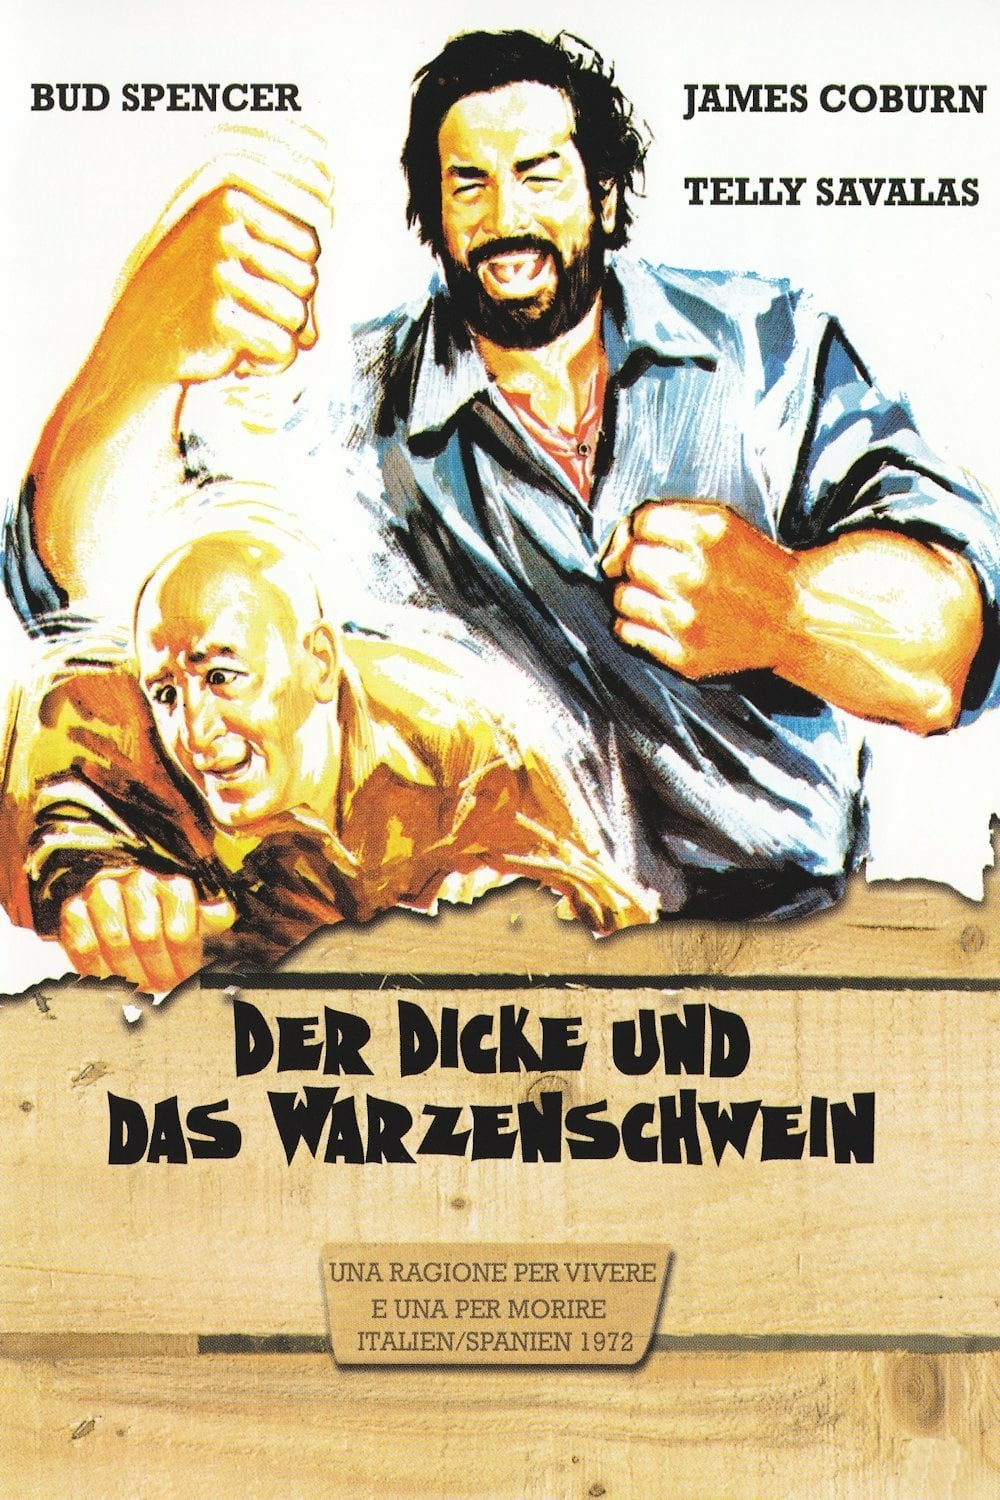 Plakat von "Der Dicke und das Warzenschwein"